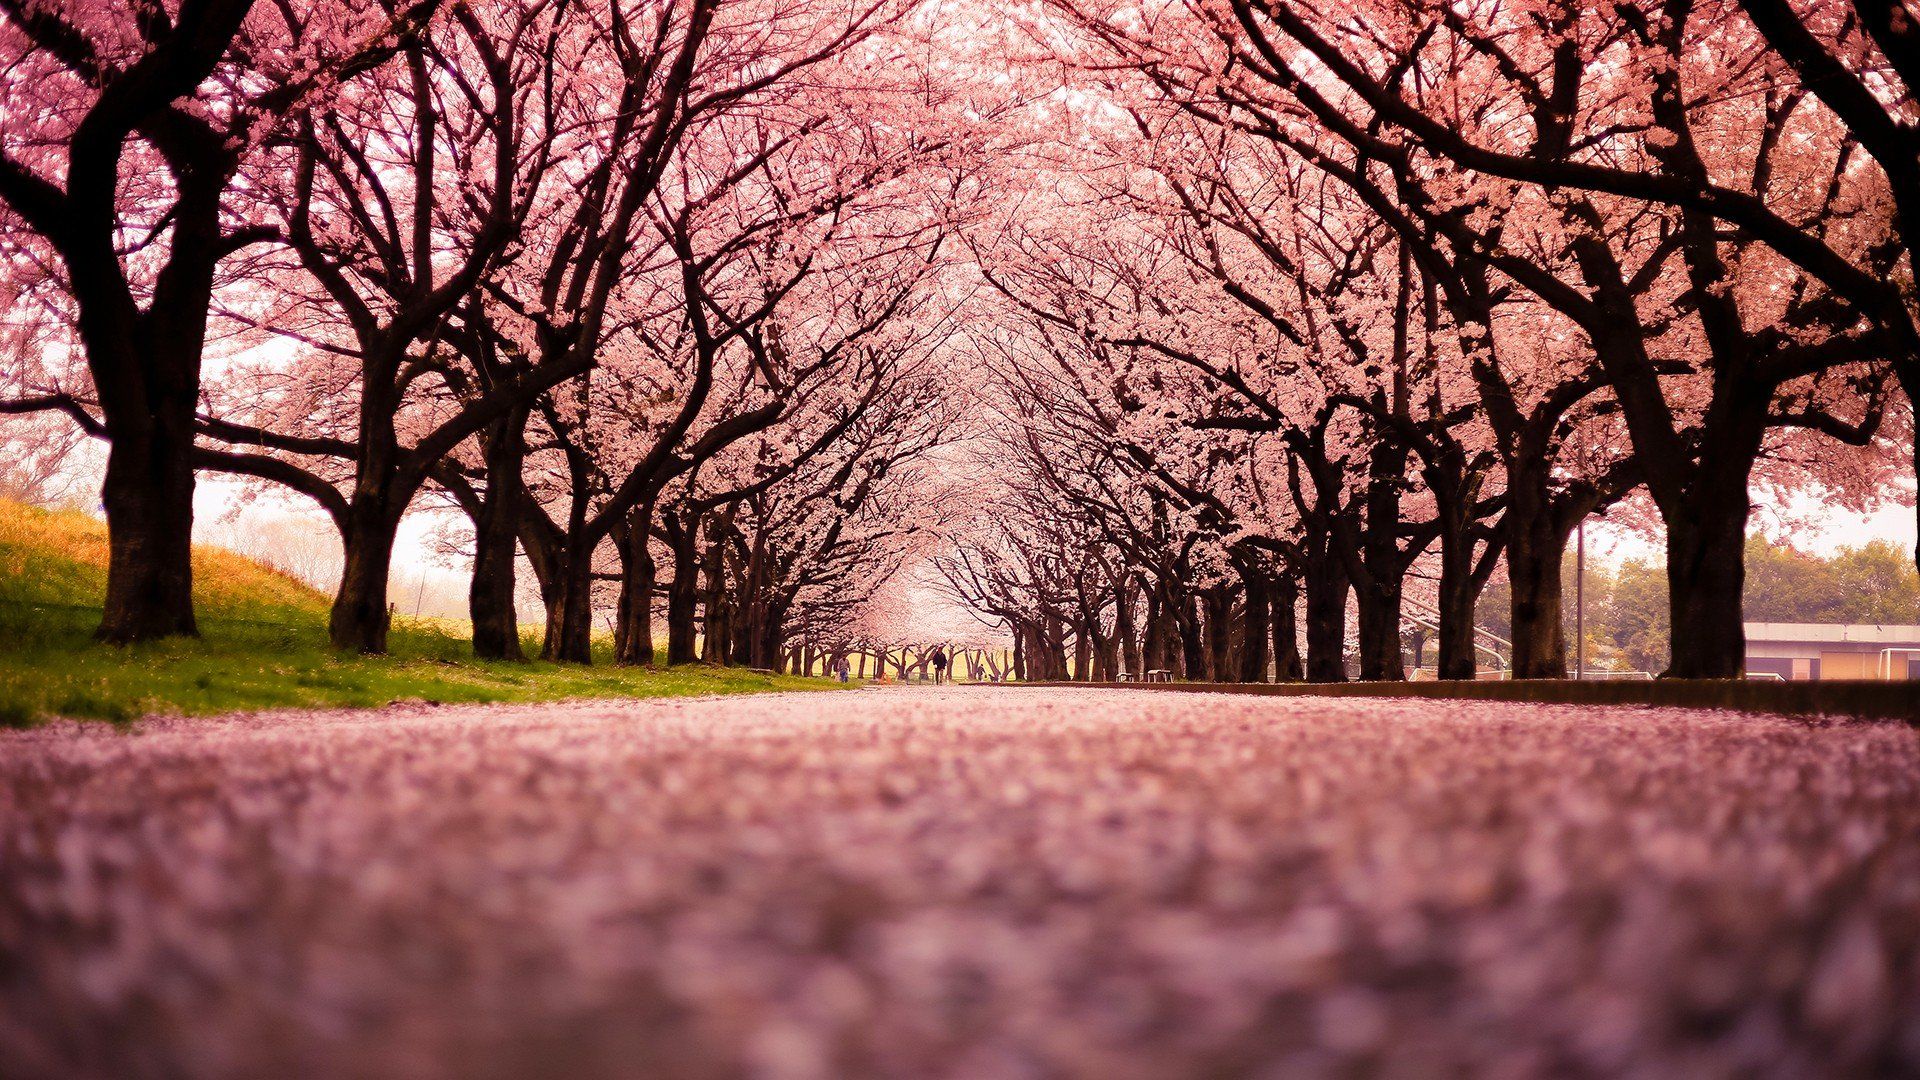 عکس استوک و رایگان و دیدنی از درخت های هلو پر از شکوفه 